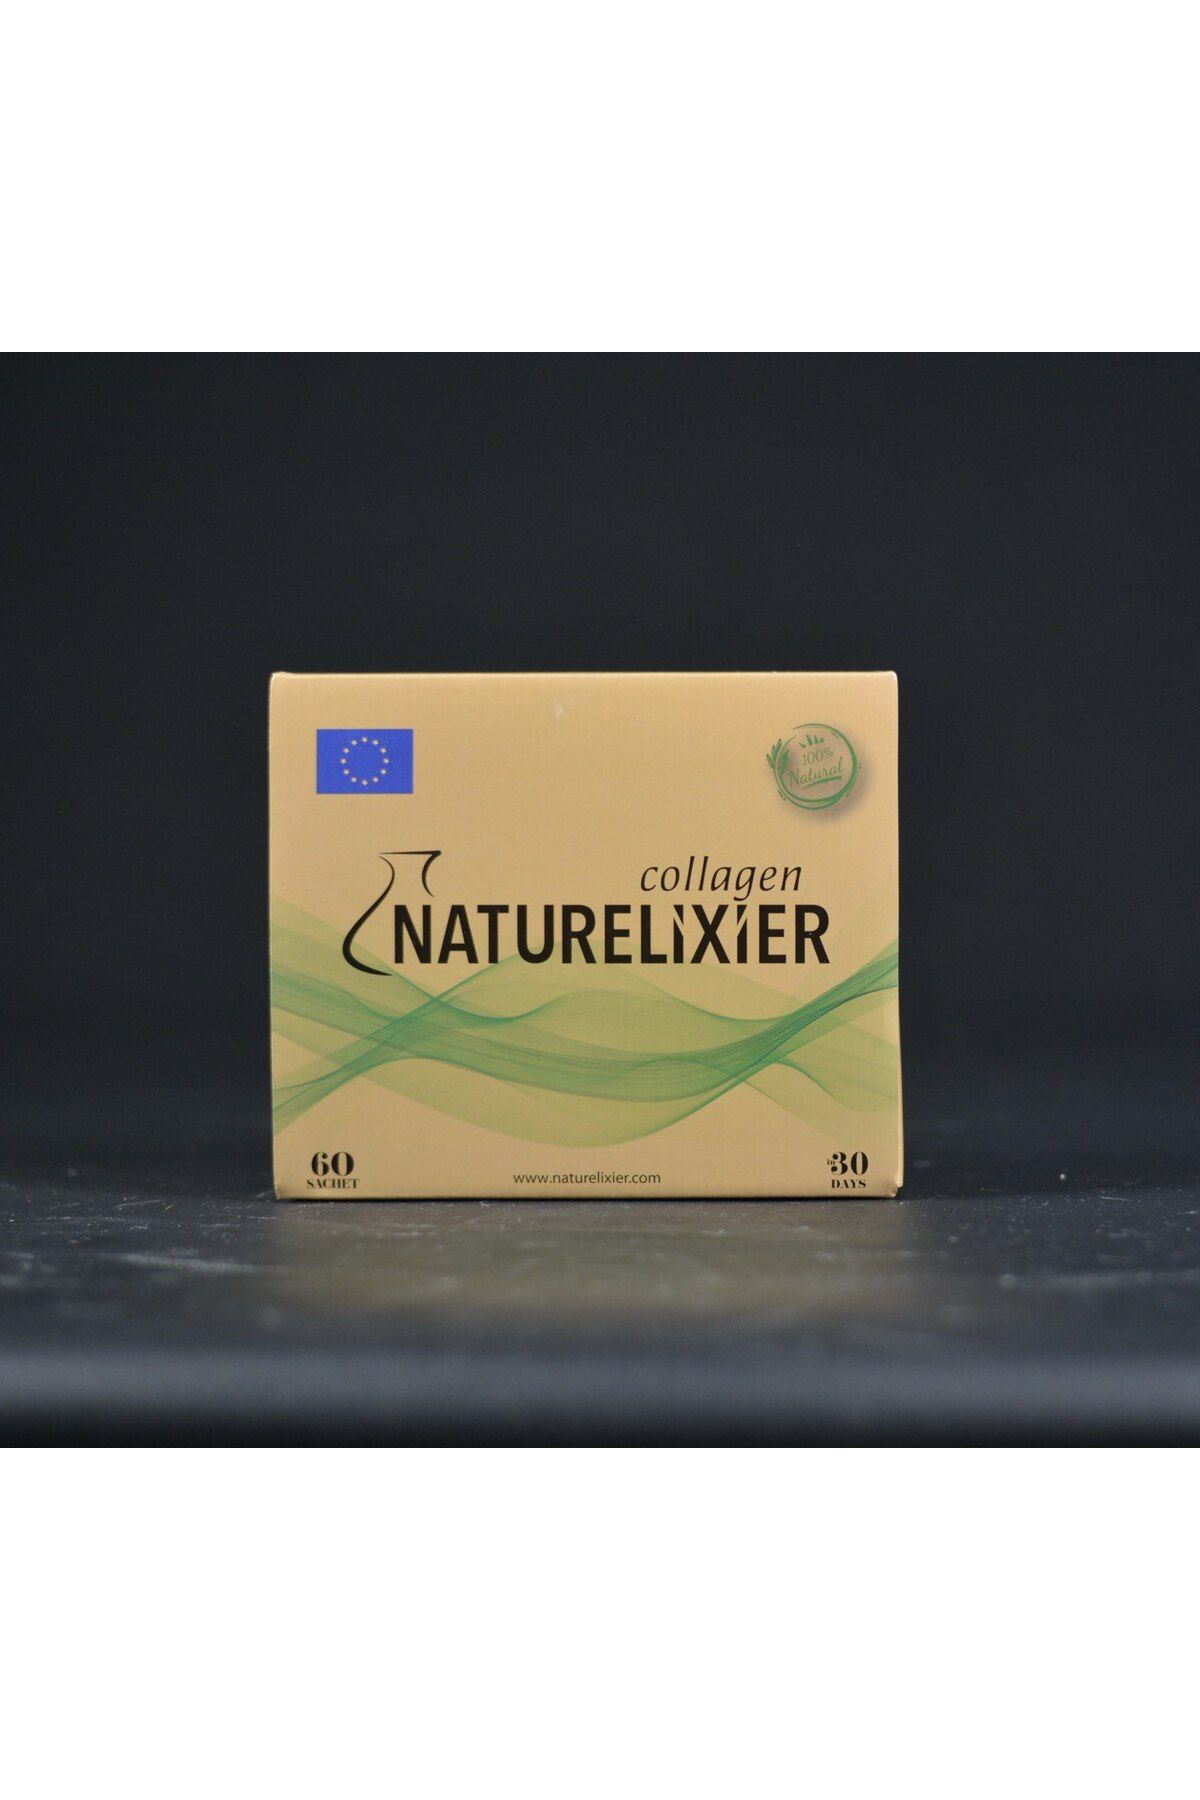 NATURELİXİER Detox Çay Collagen 60'lı Şase Naturelixier